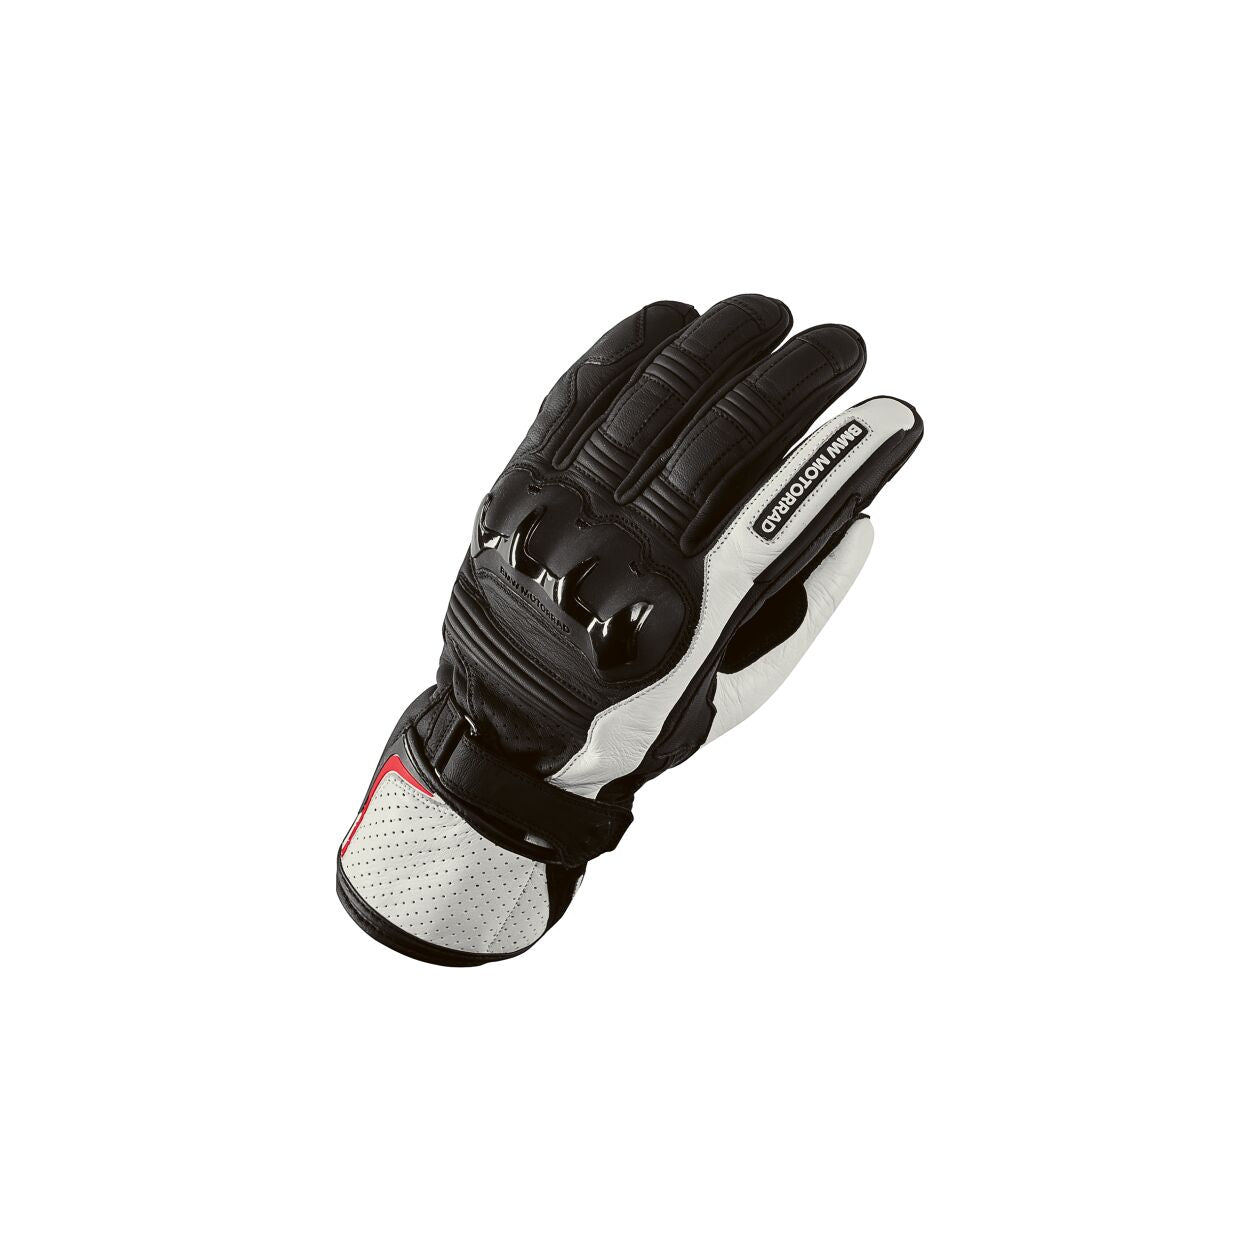 BMW Motorrad ProRace Gloves Black/White